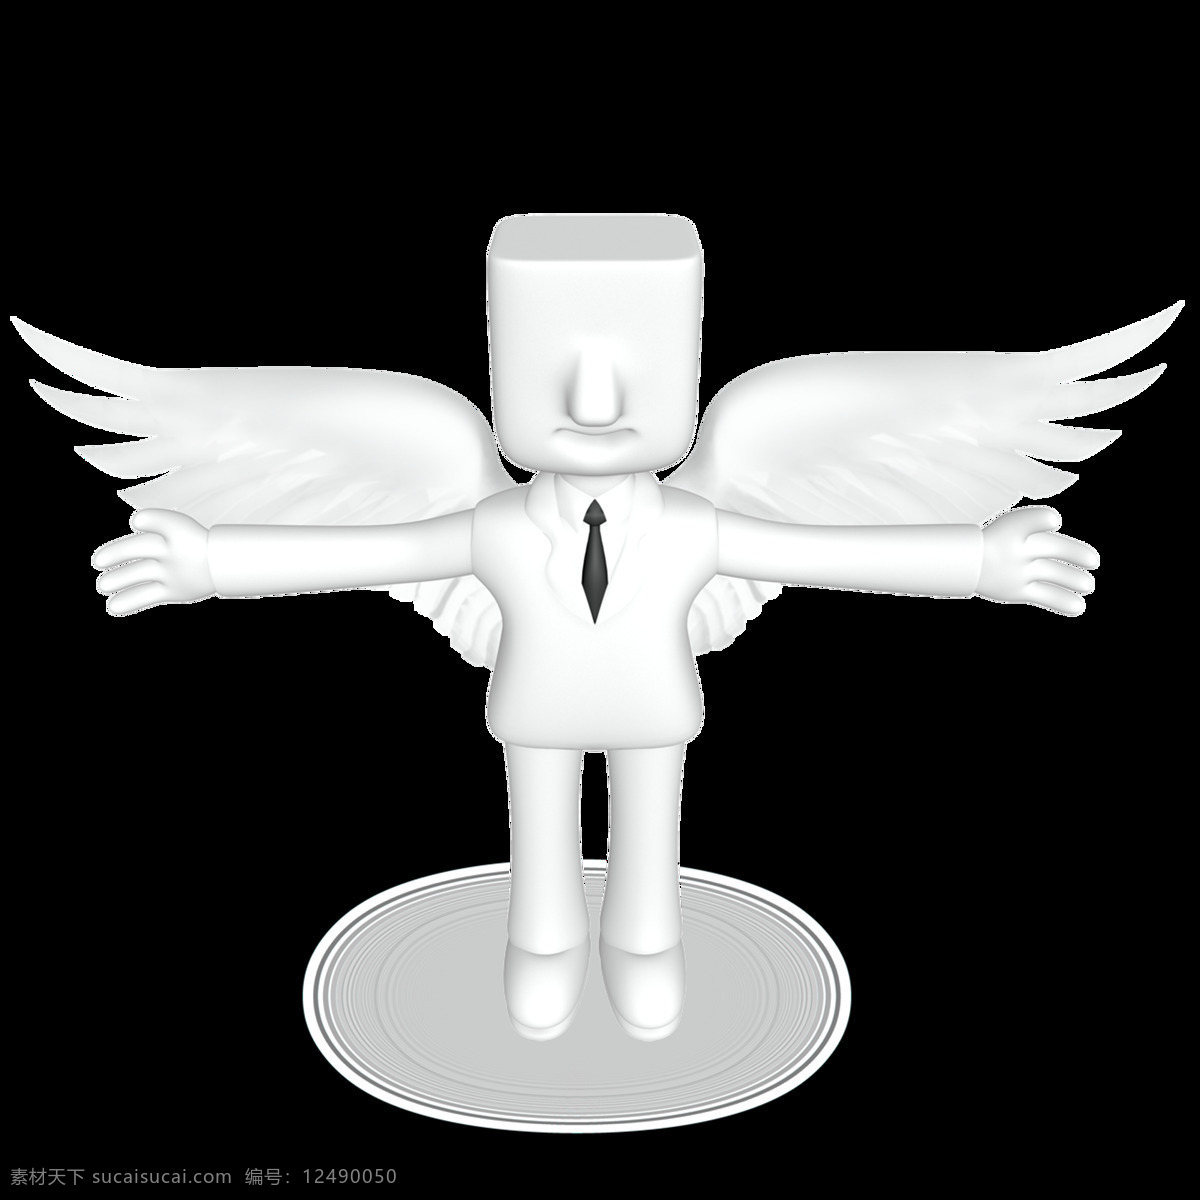 3d 立体 天使 元素 翅膀 和平 矢量